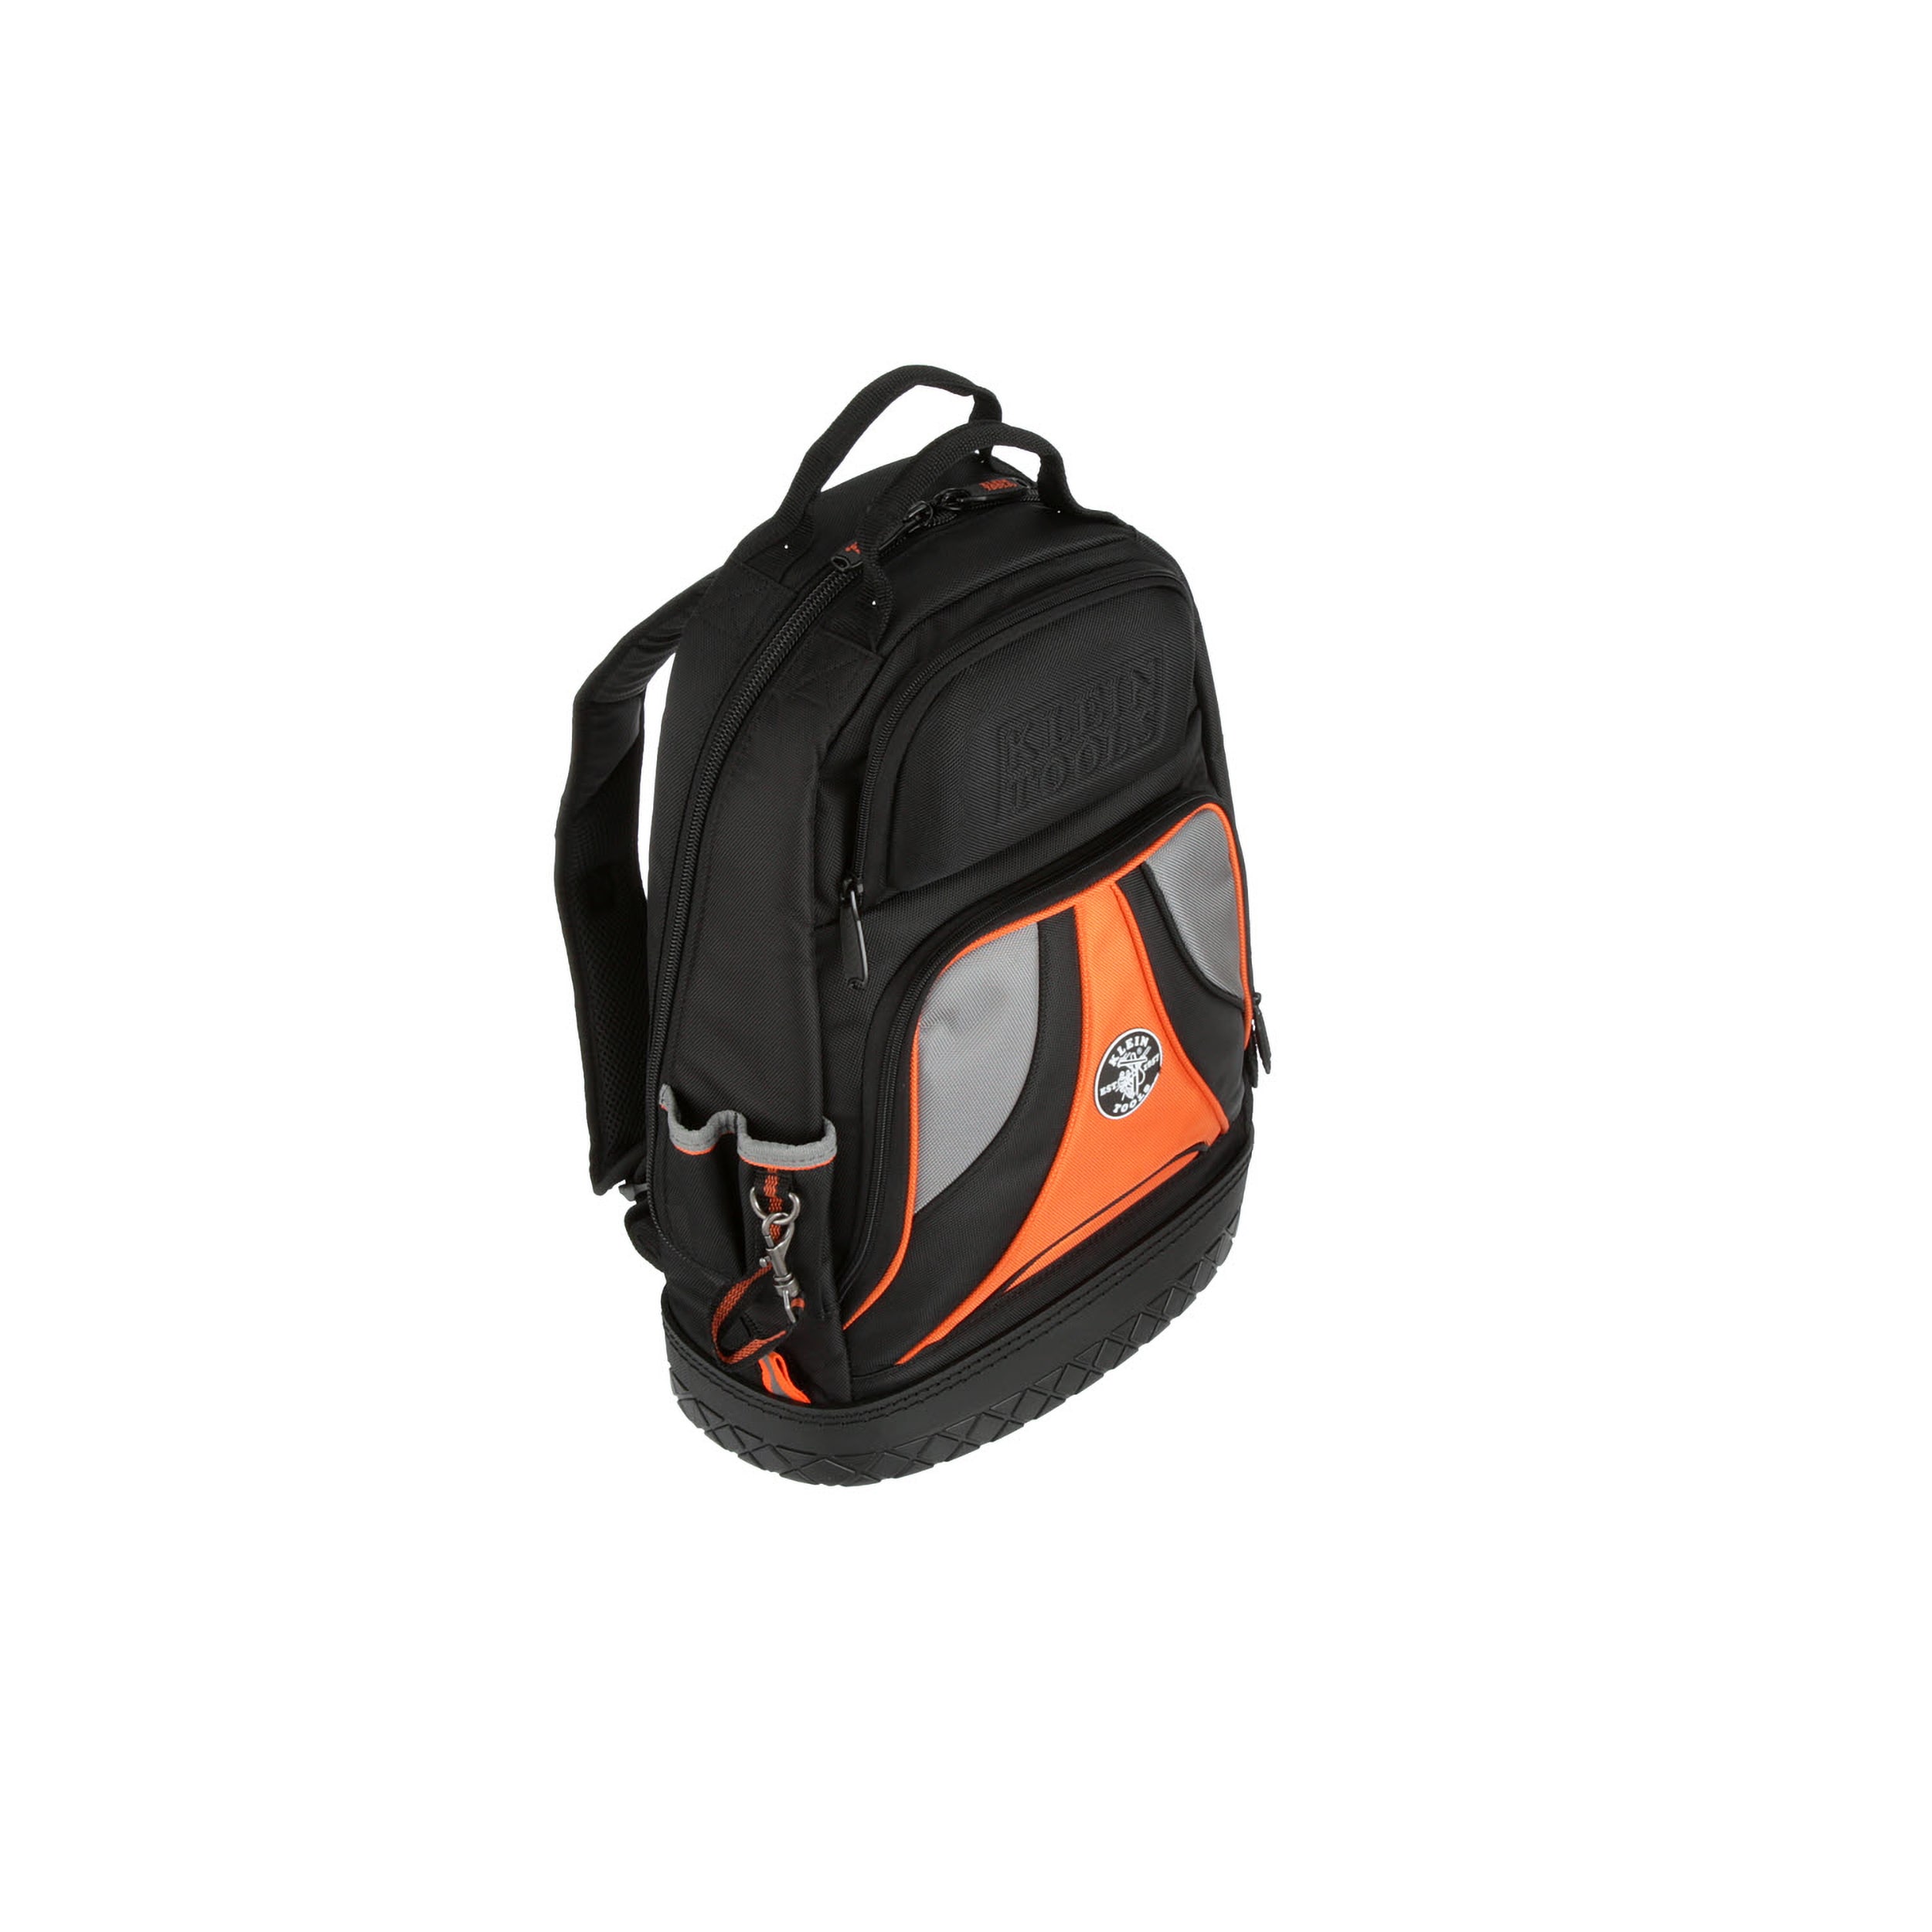 Husky 16 In. Pro Tool Backpack Waterproof Molded Hardshell Pocket Heavy  Duty | eBay